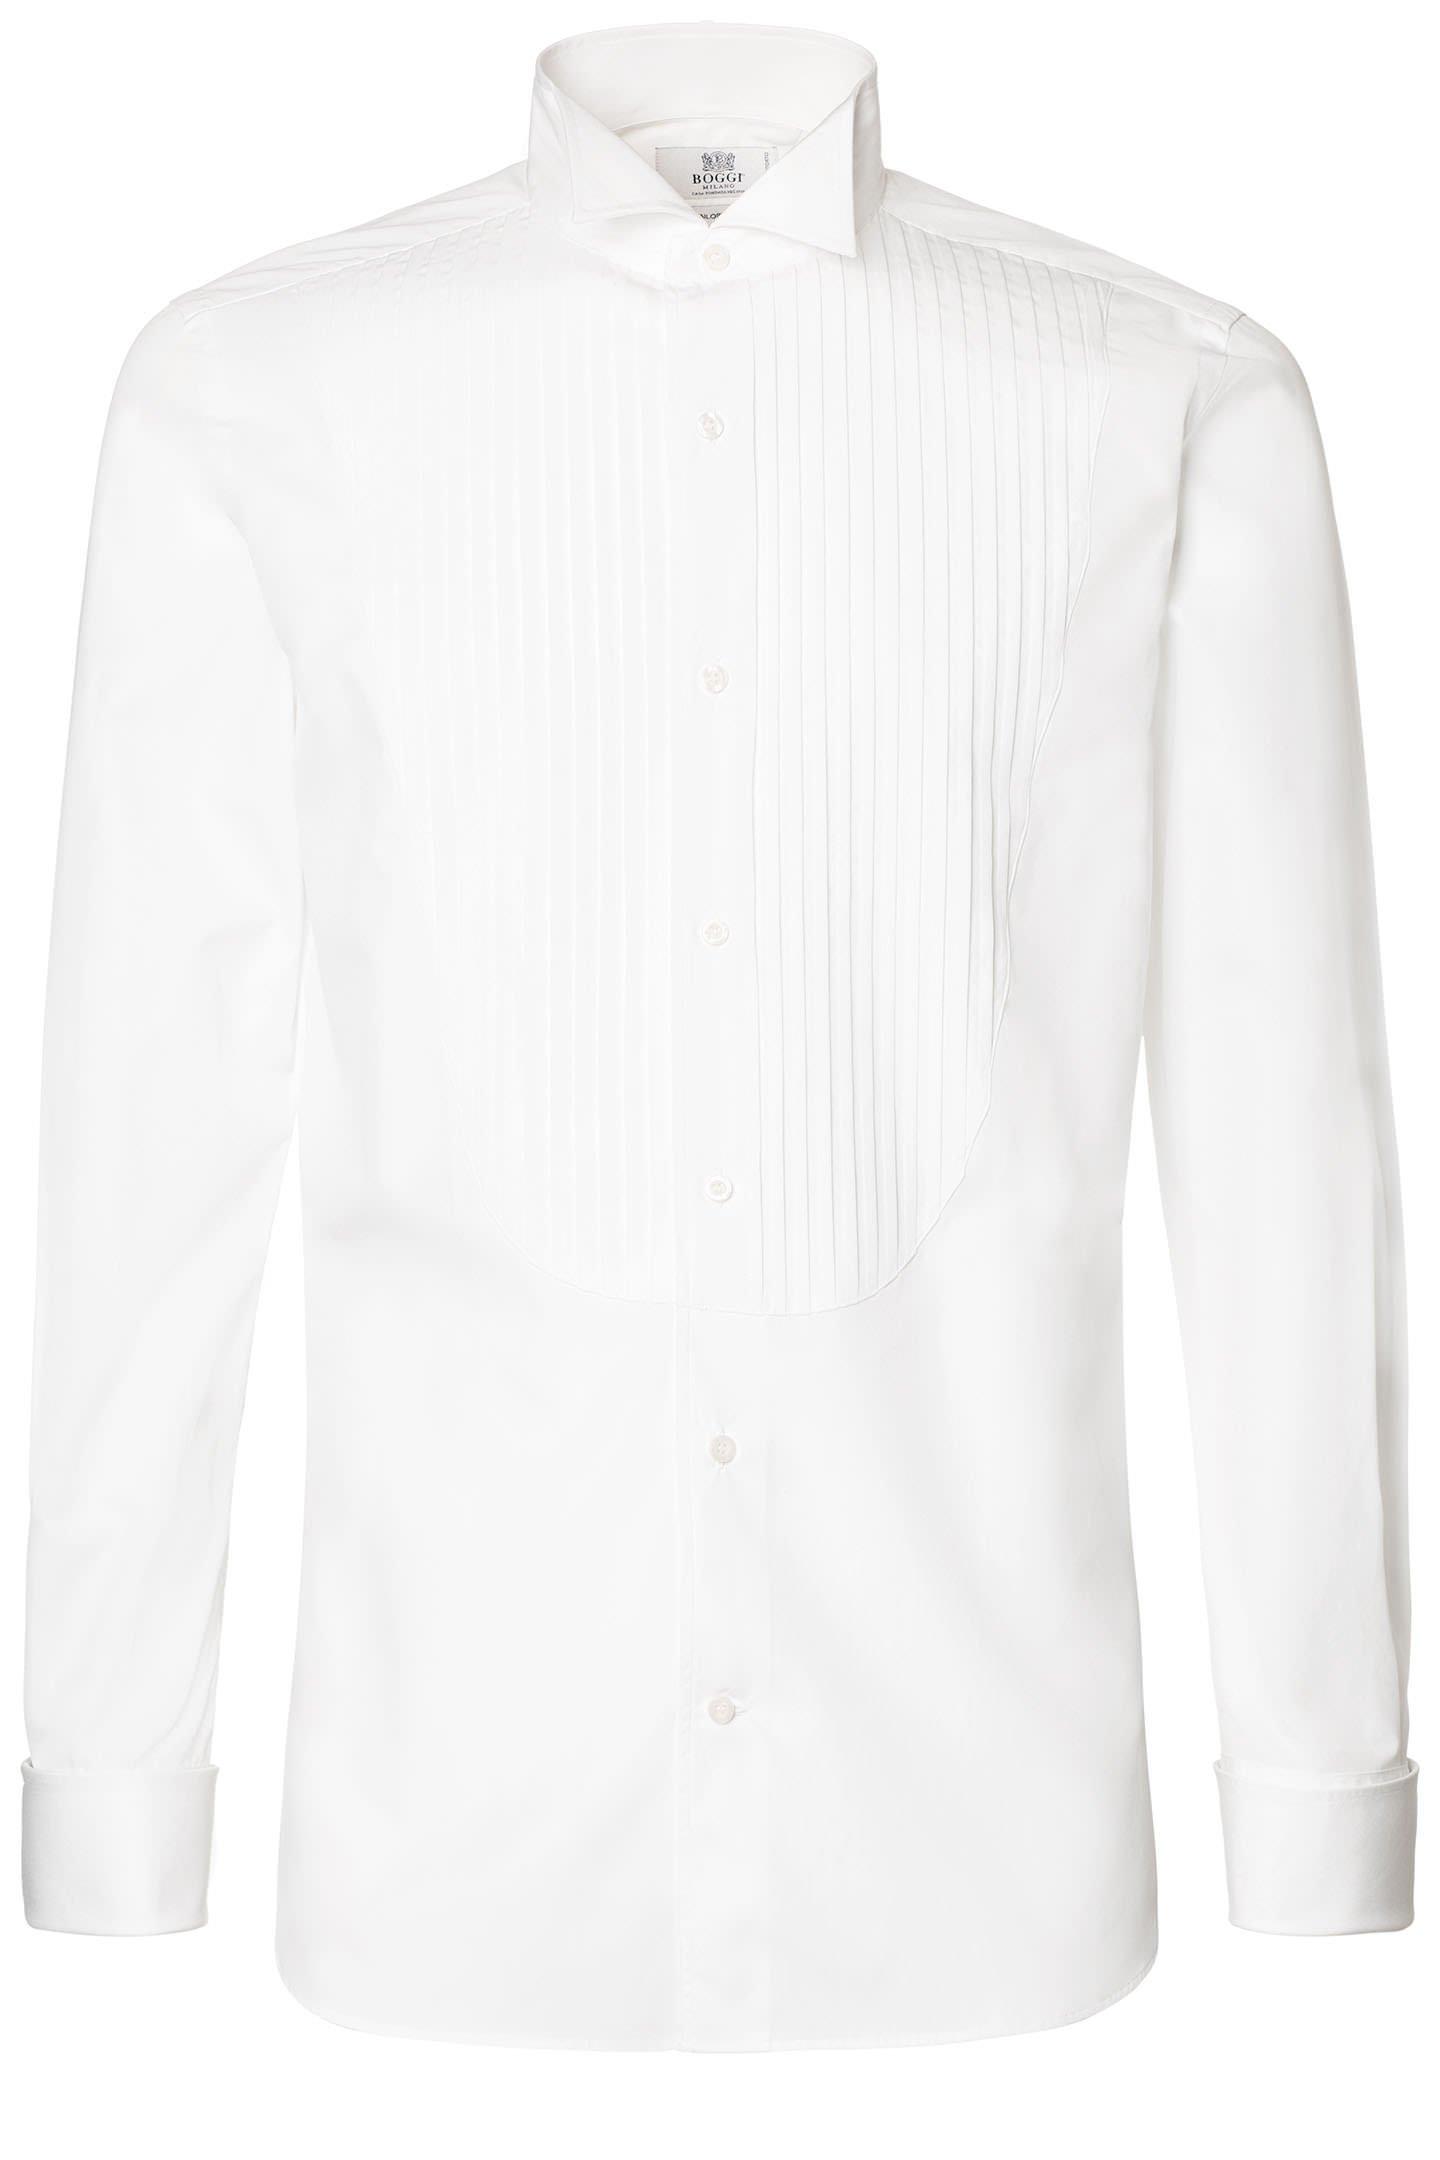 Boggi Milano - قميص توكسيدو بليسيه من قطن بوبلين أبيض